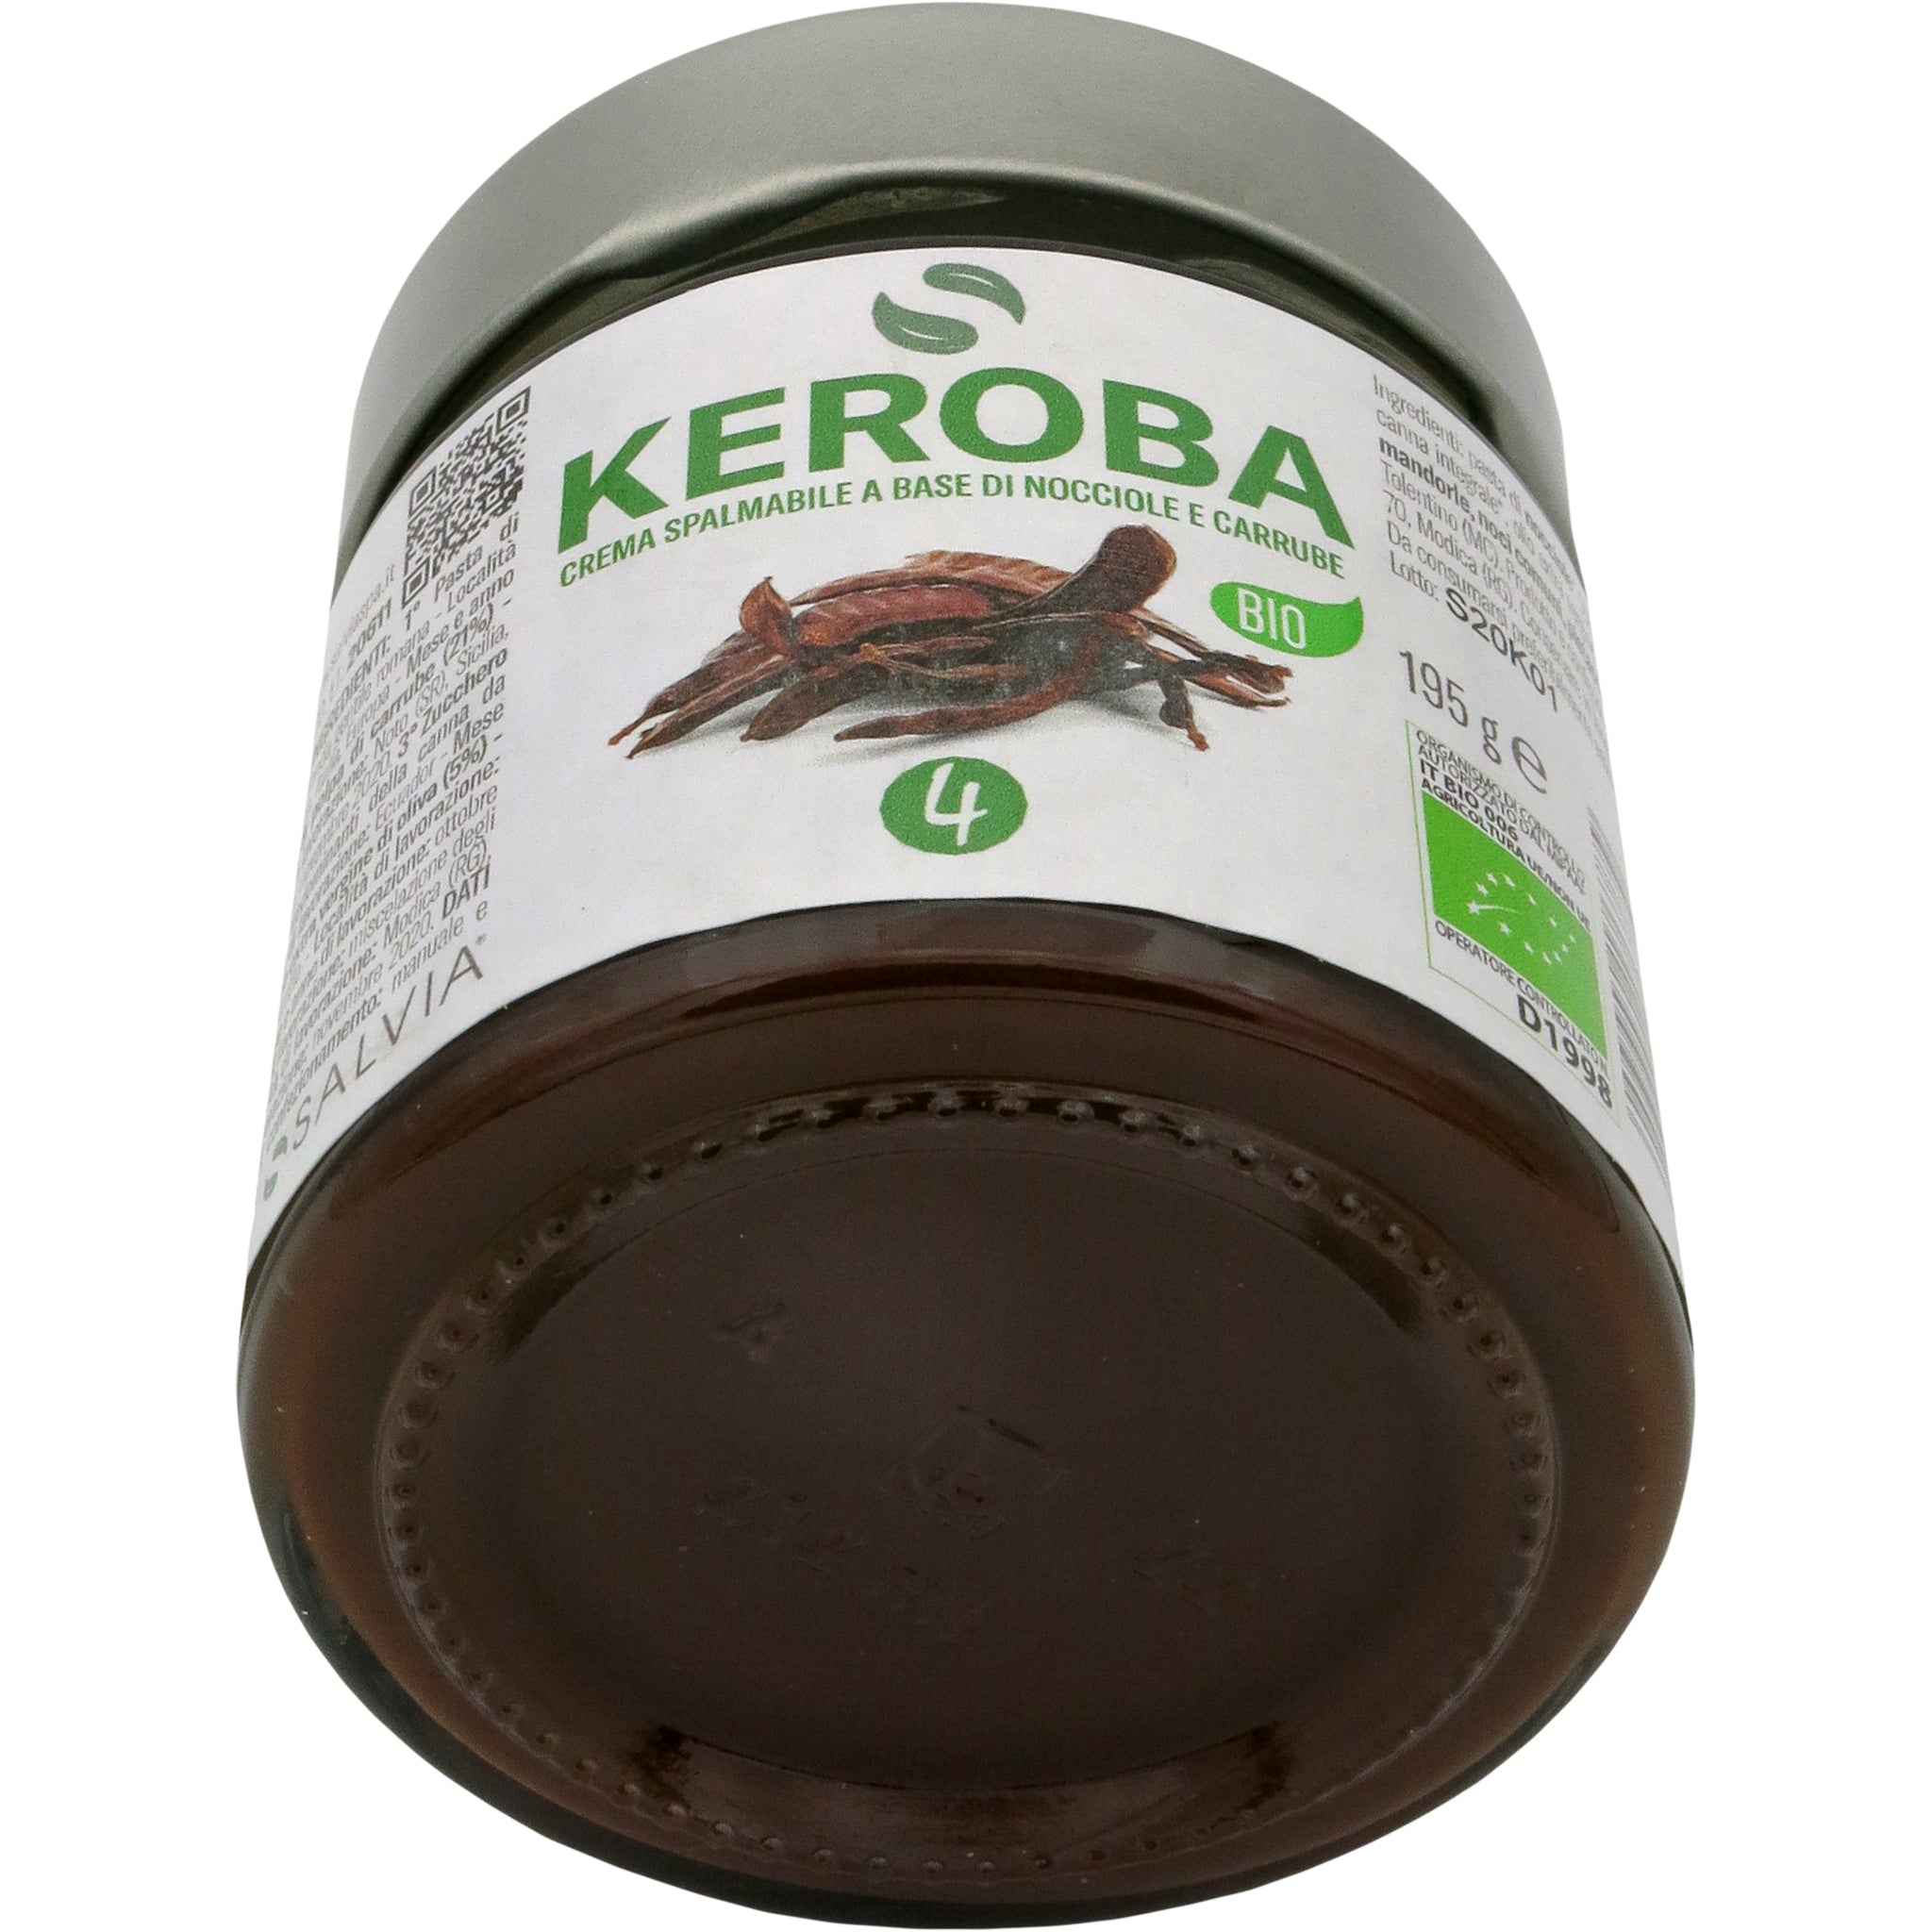 Keroba - Crema di nocciole e carruba BIO